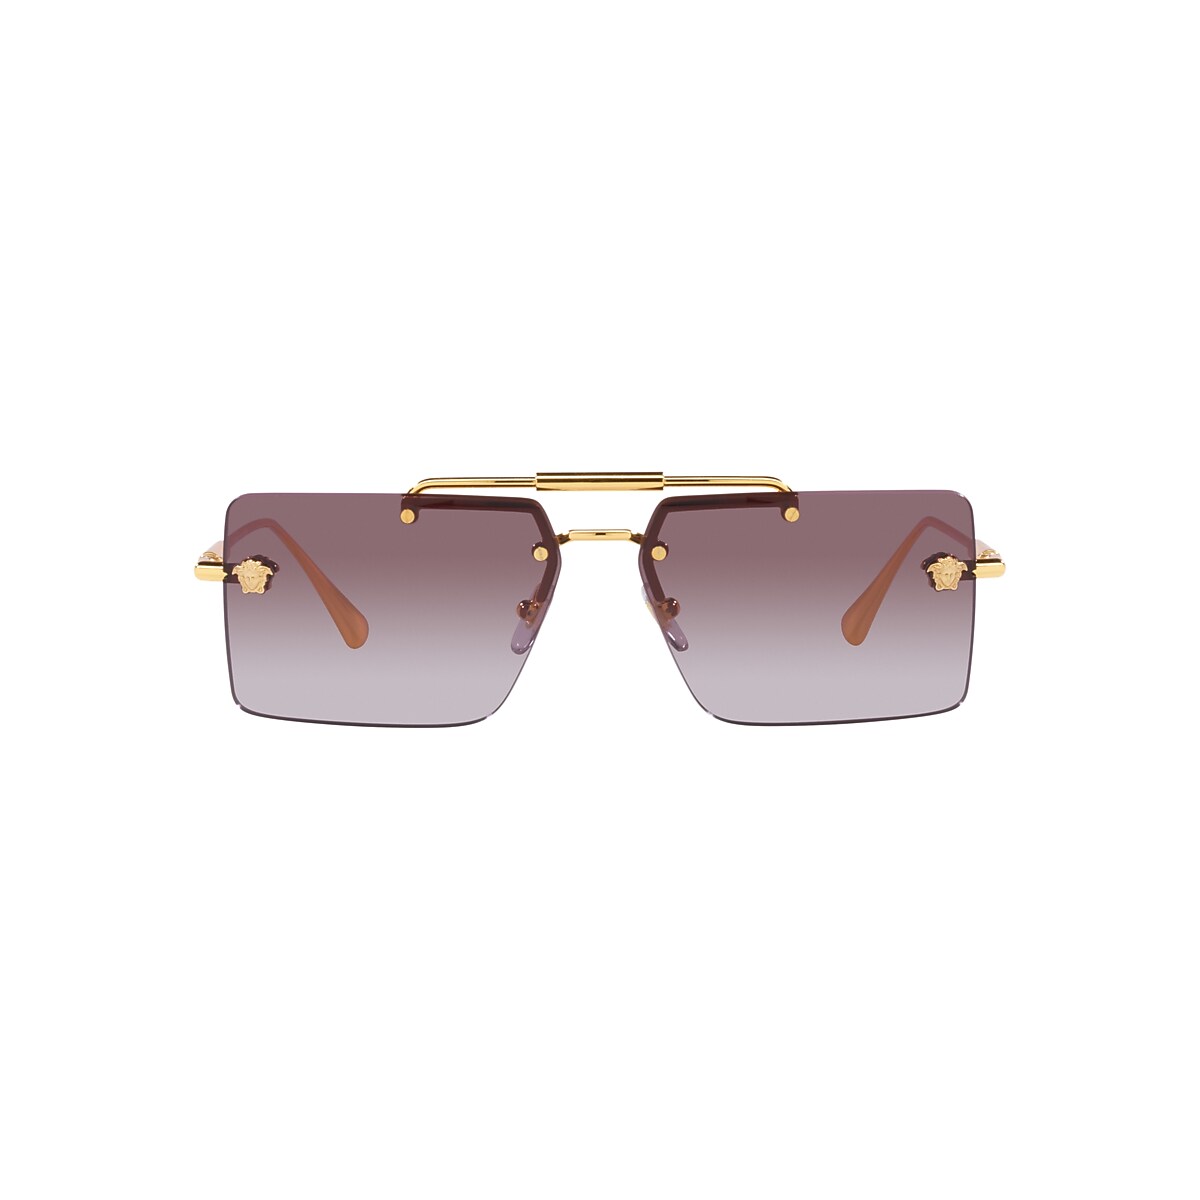 VERSACE VE2245 Gold - Women Luxury Sunglasses, Violet Gradient Lens